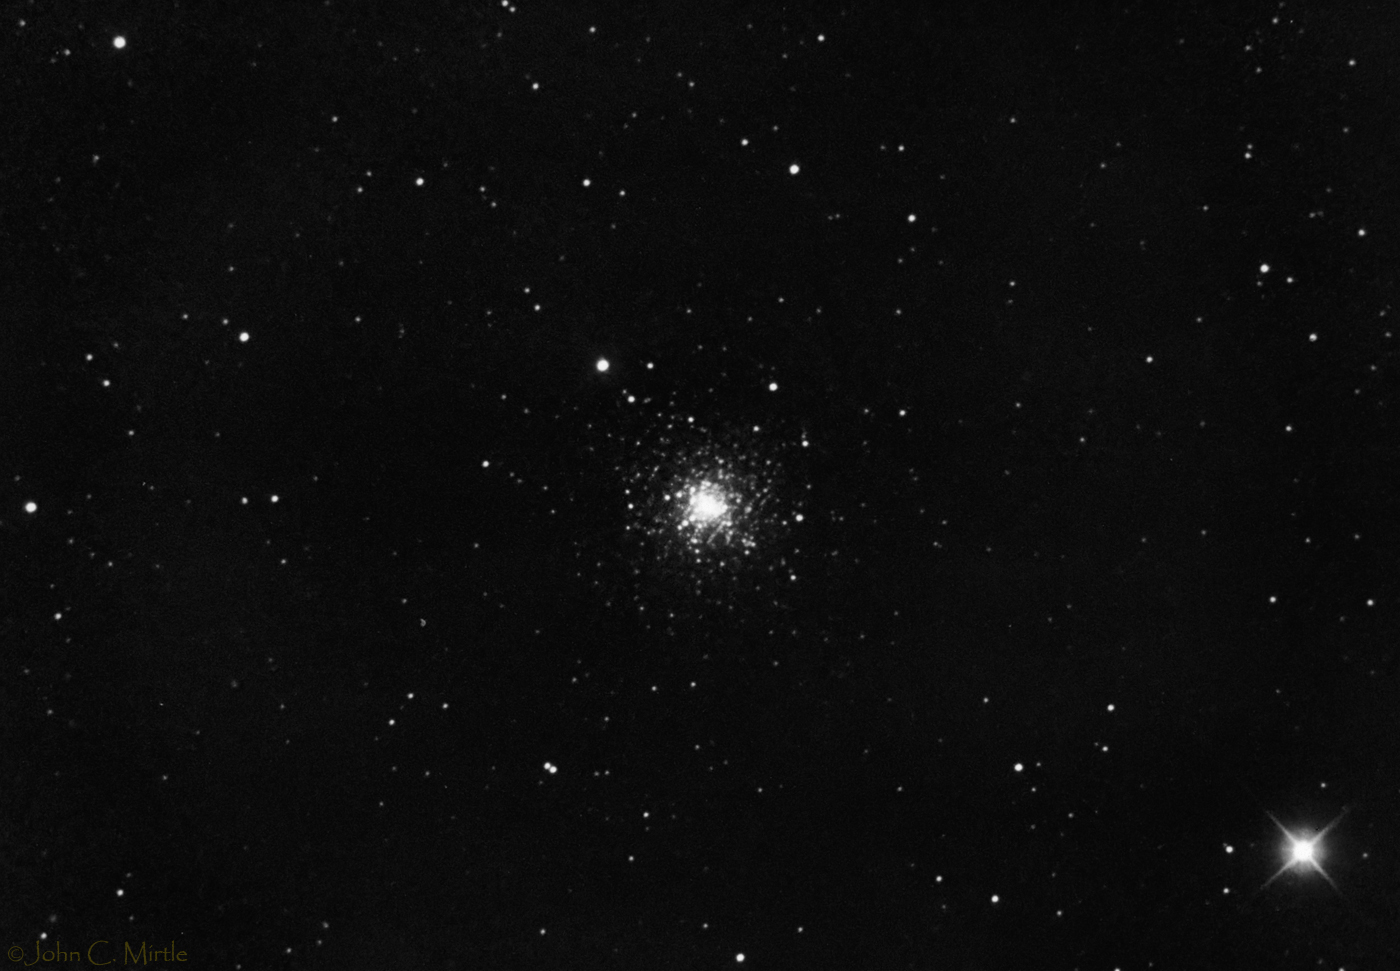 Globular Cluster Messier 30